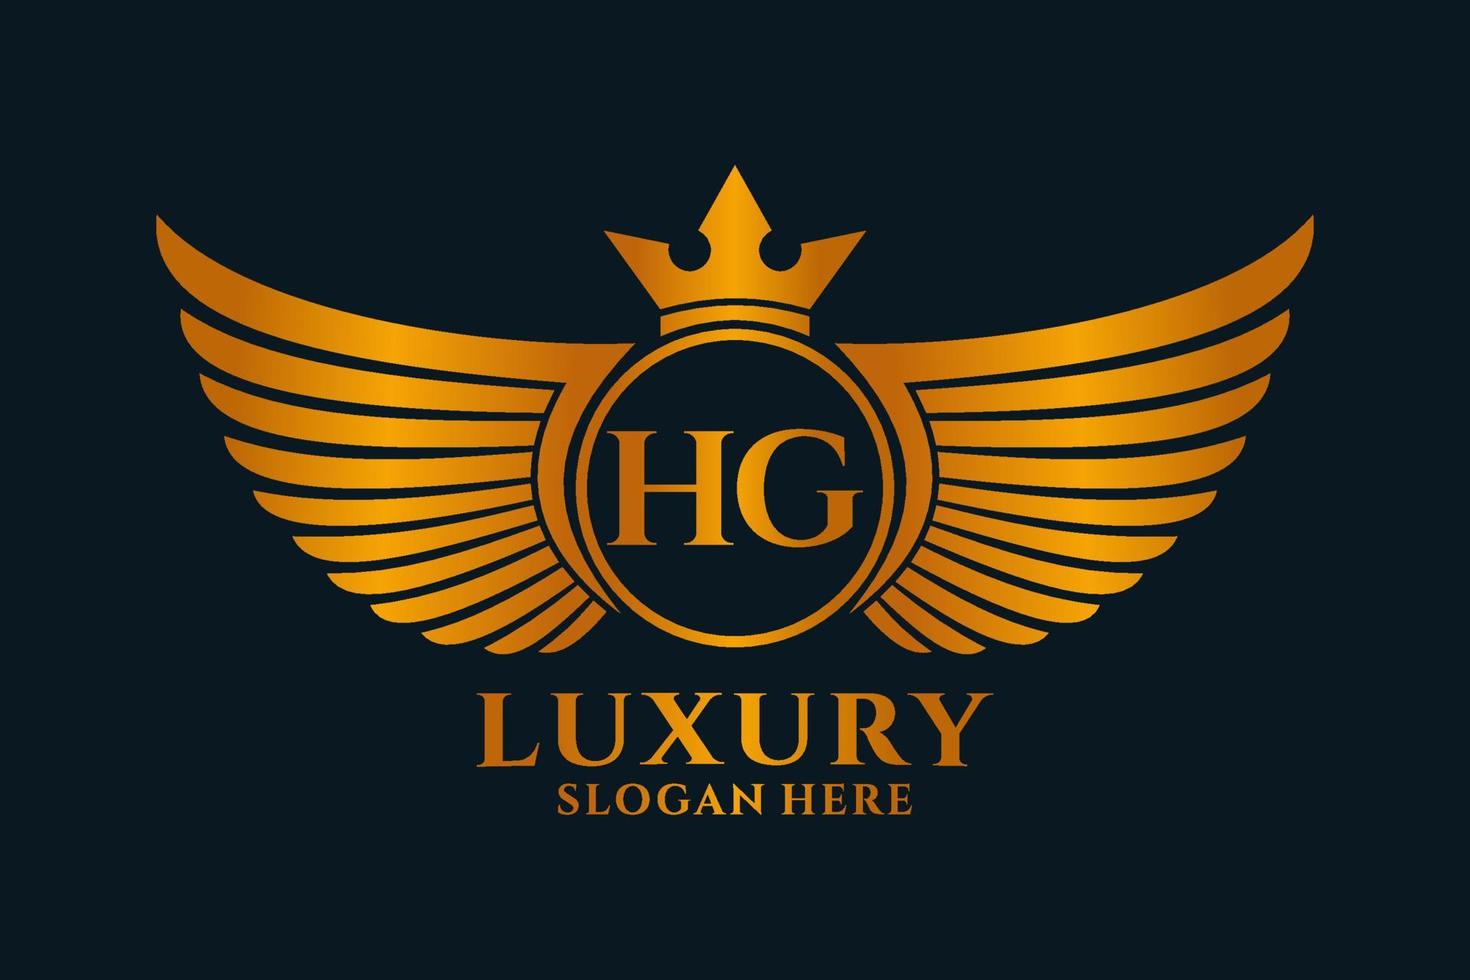 lettre d'aile royale de luxe hg crête vecteur de logo couleur or, logo de victoire, logo de crête, logo d'aile, modèle de logo vectoriel.